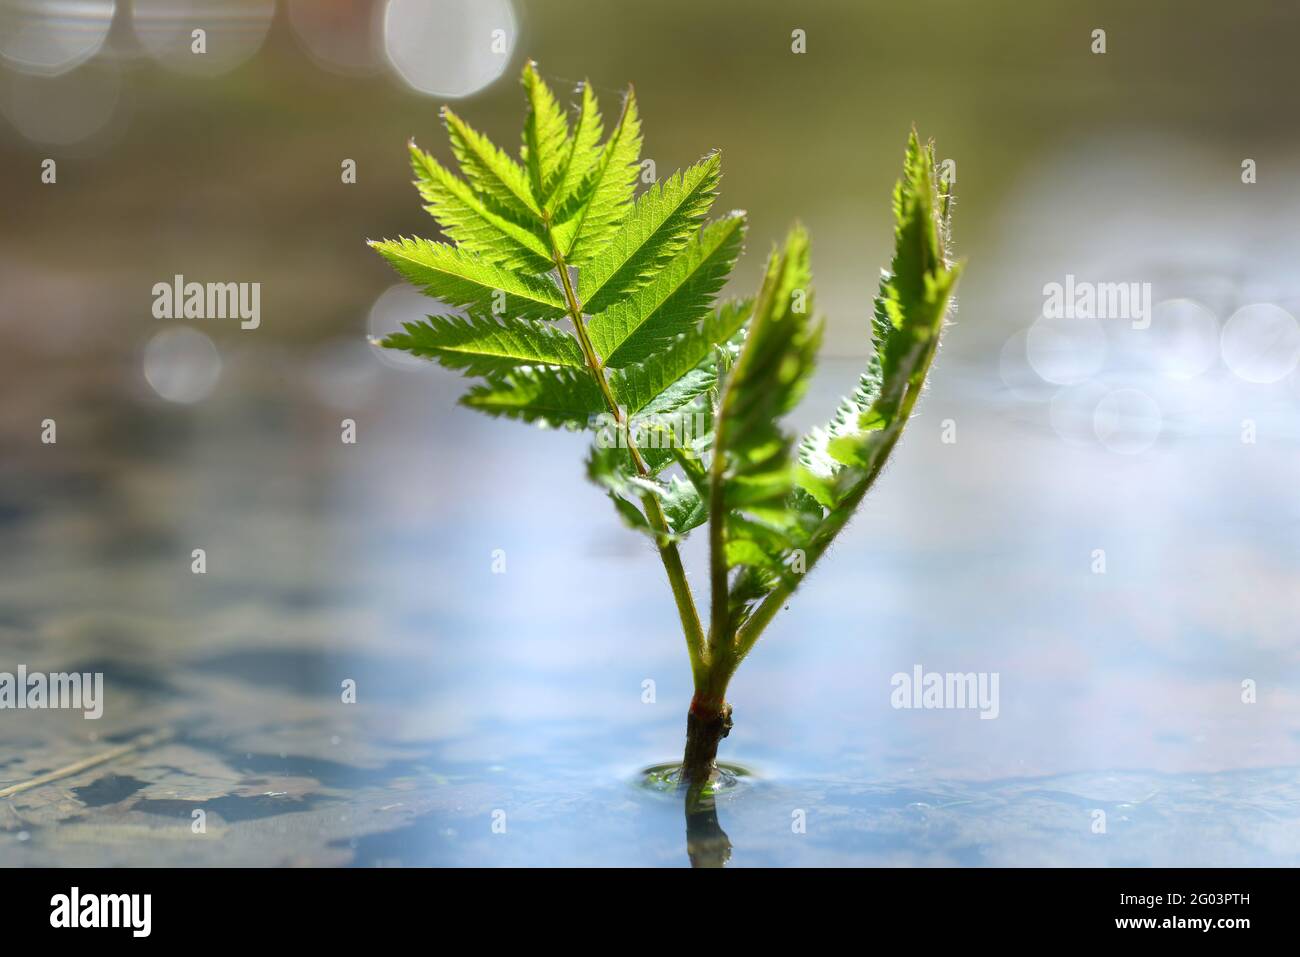 Junge Pflanze, die in einer Wasserpfütze wächst. Konzept des neuen Lebens. Stockfoto